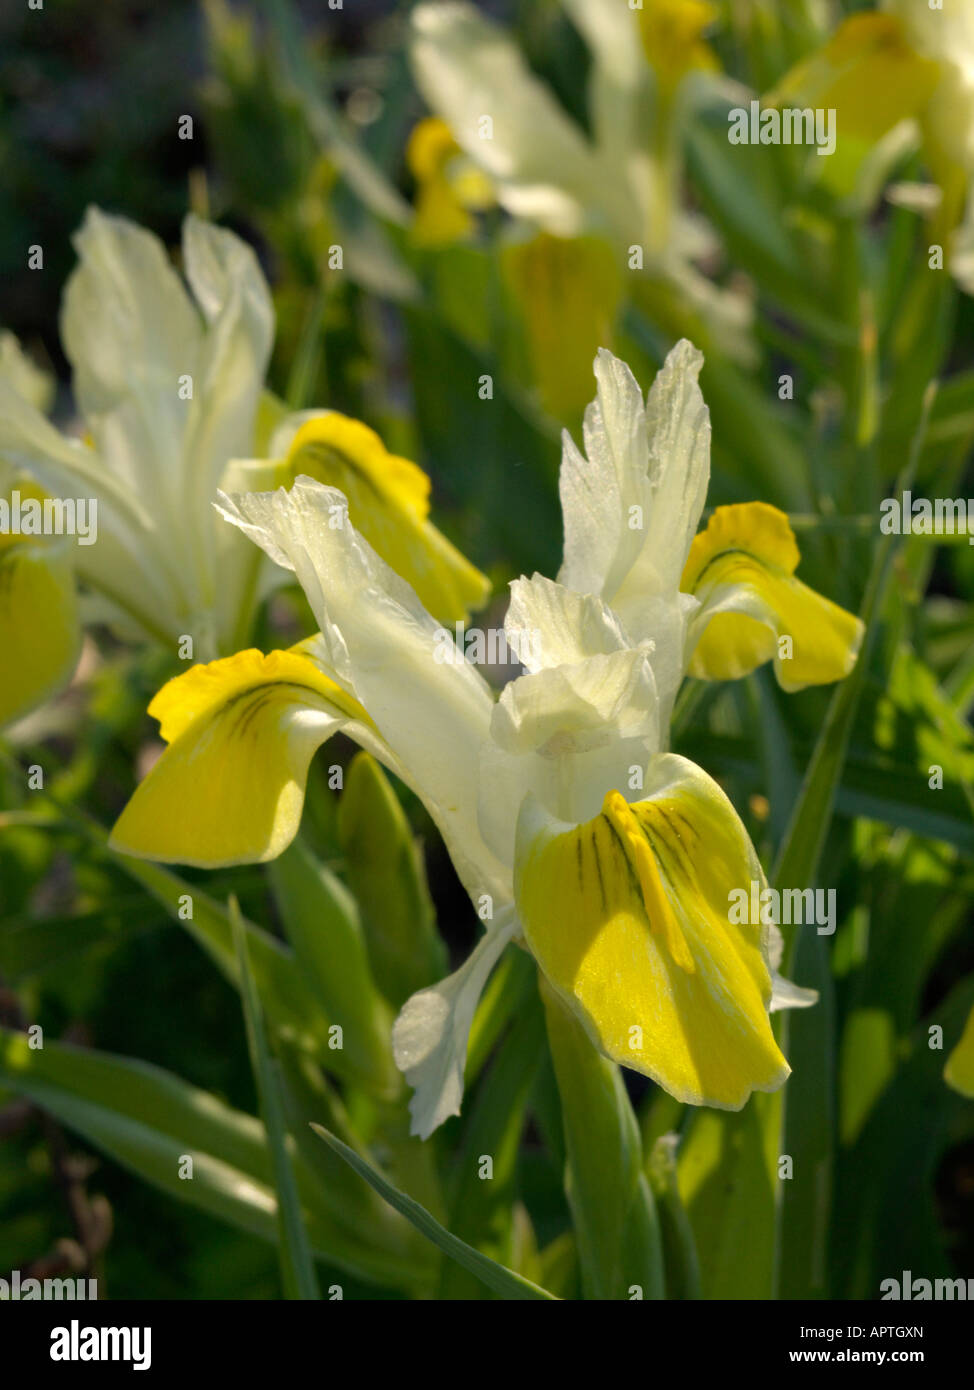 Dwarf iris (Iris bucharica) Stock Photo